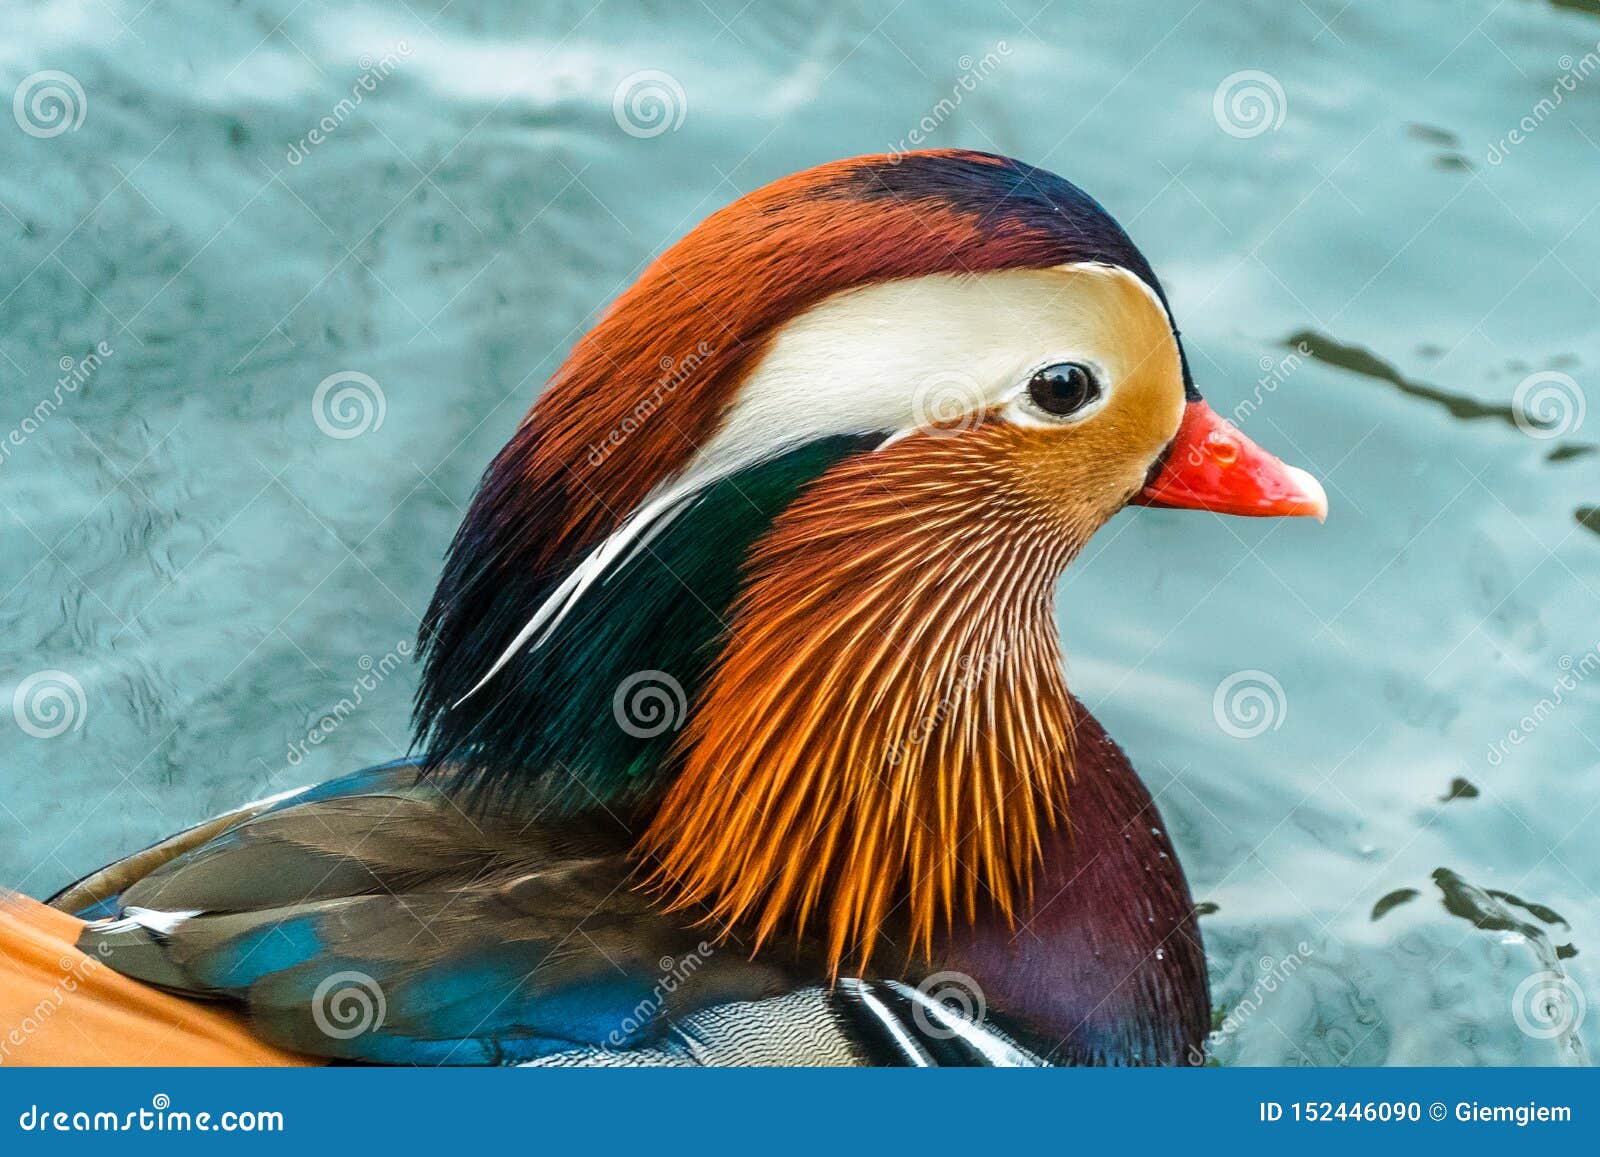 species duck Asian reddy